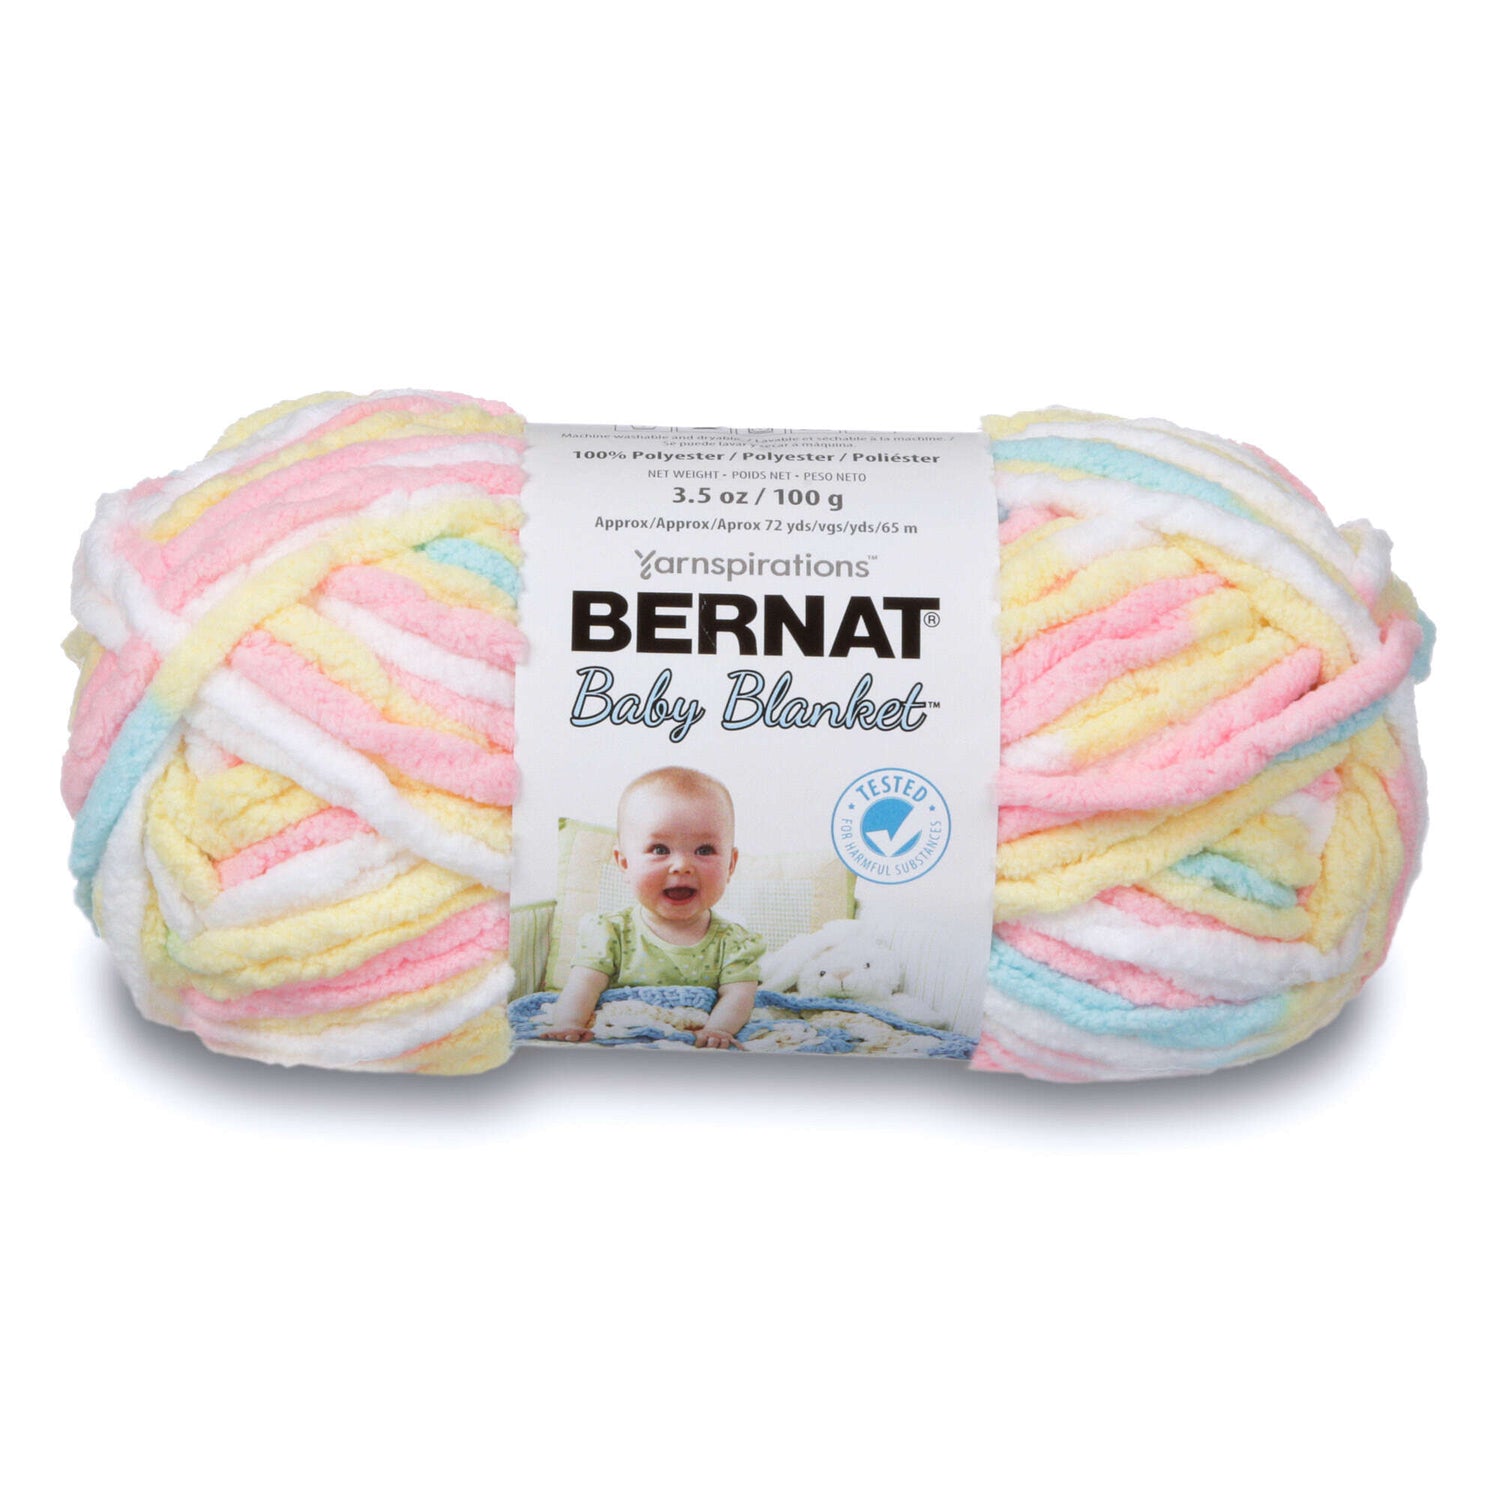 Bernat Baby Blanket Yarn / flock of Knitters New Zealand